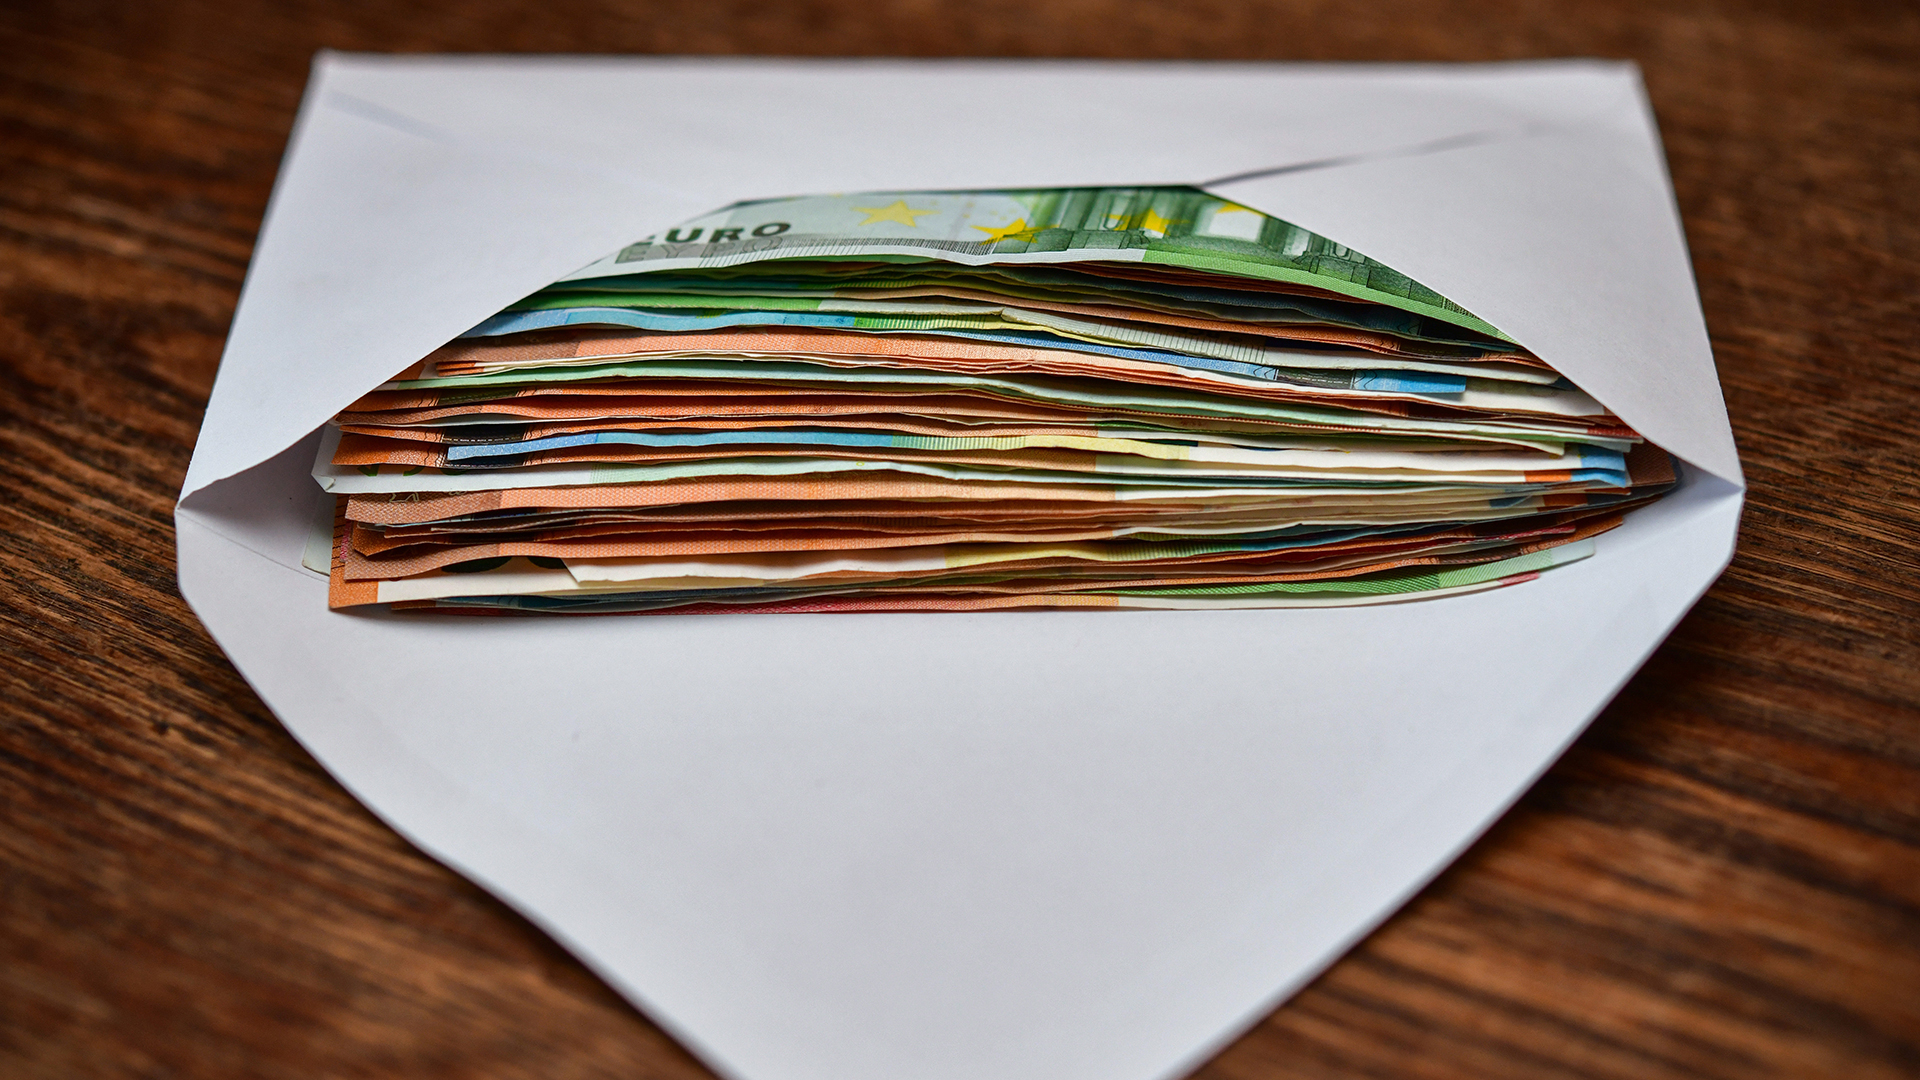 Briefumschlag mit Geldscheinen | picture alliance / Patrick Pleul